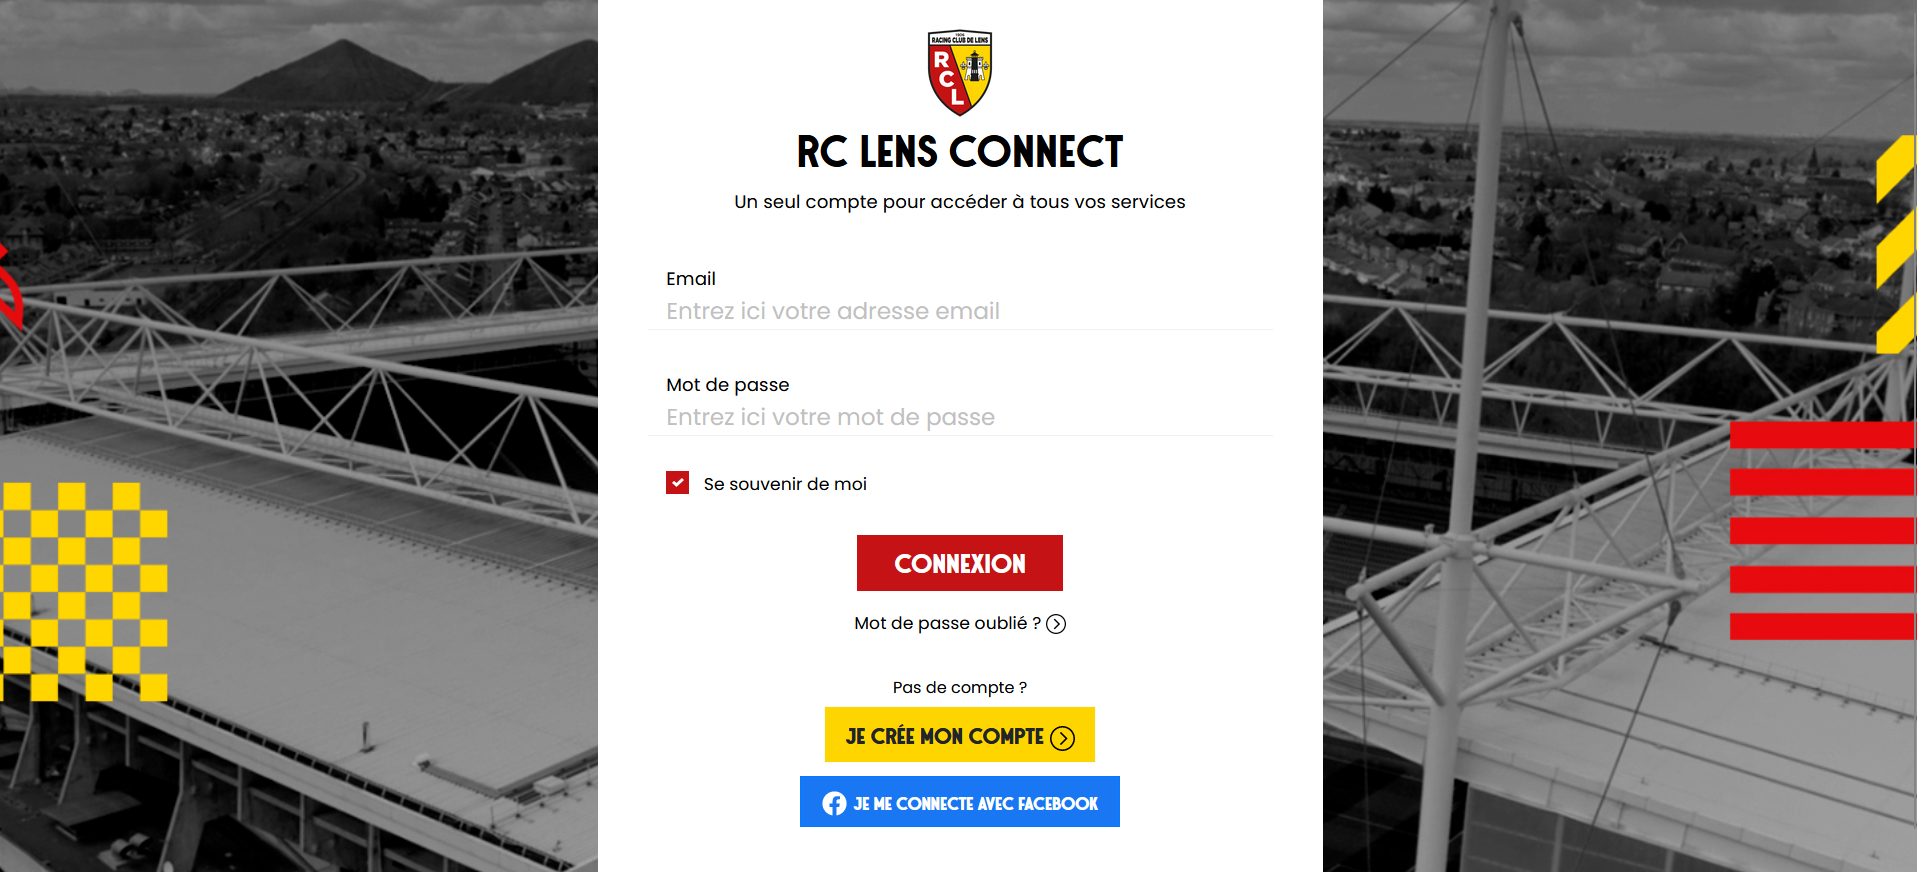 RC LENS CONNECT